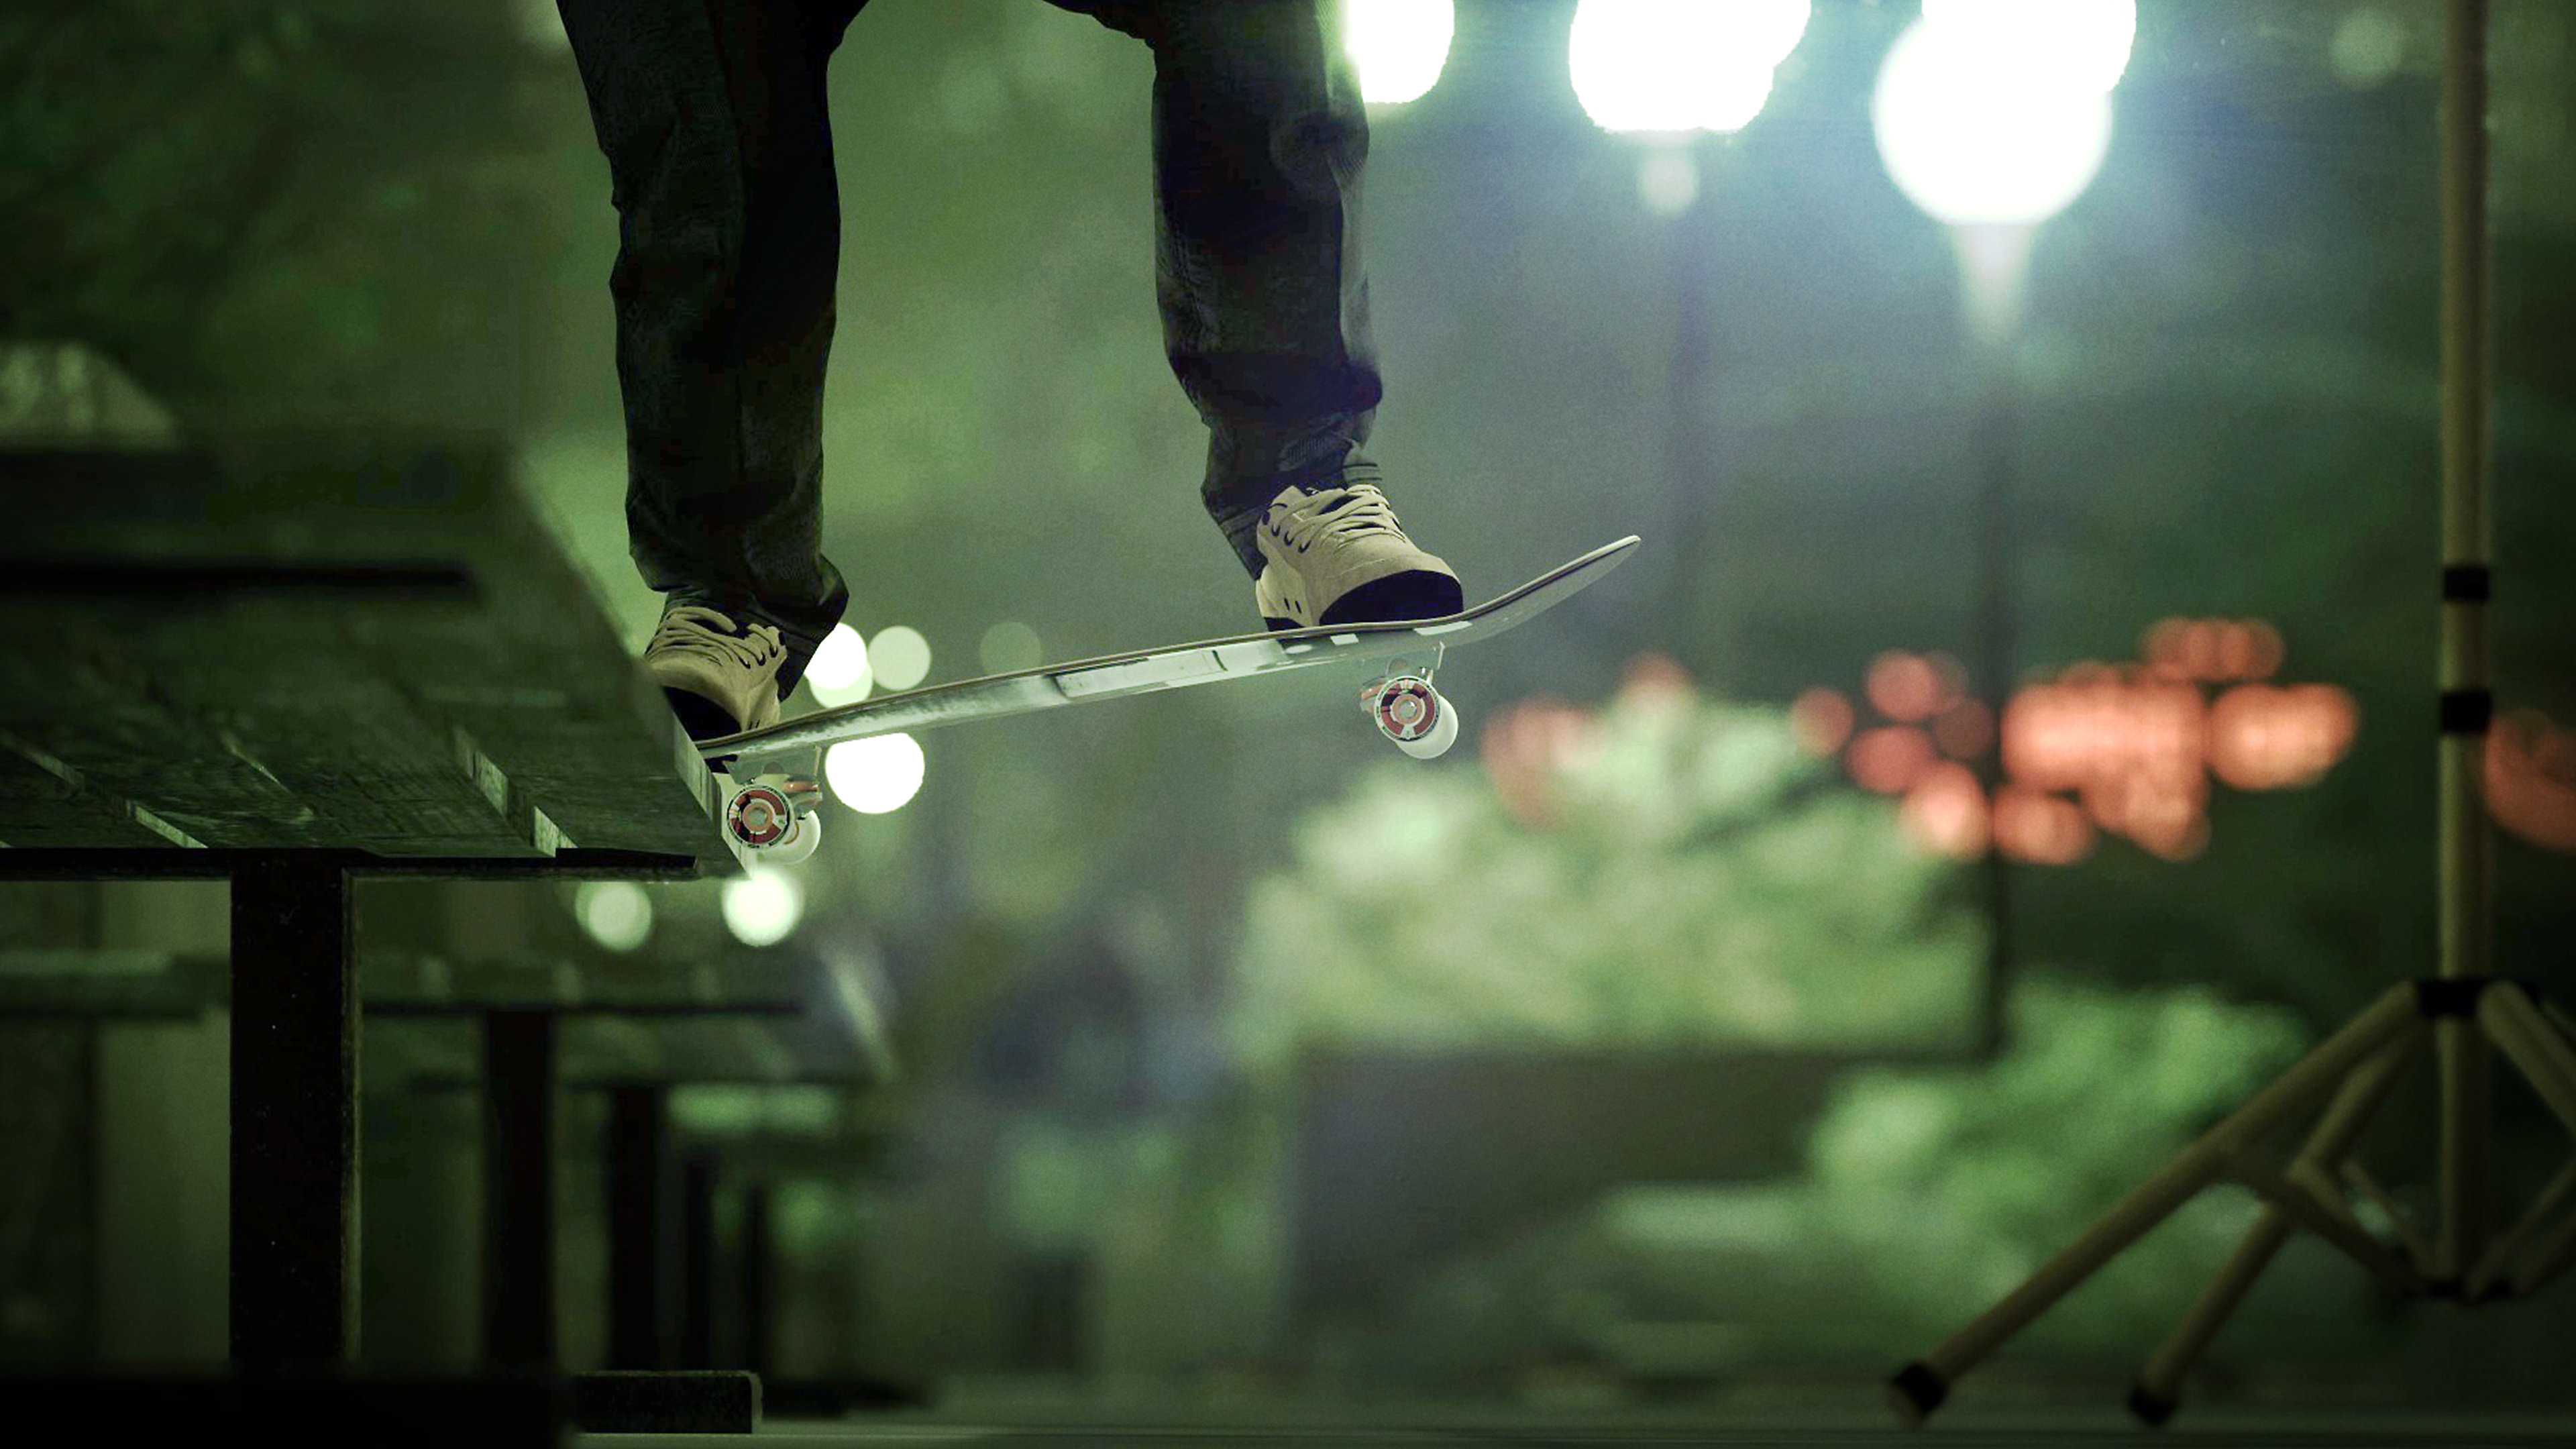 Session: Skate Sim-skærmbillede, der viser en skater, der grinder langs en bænk